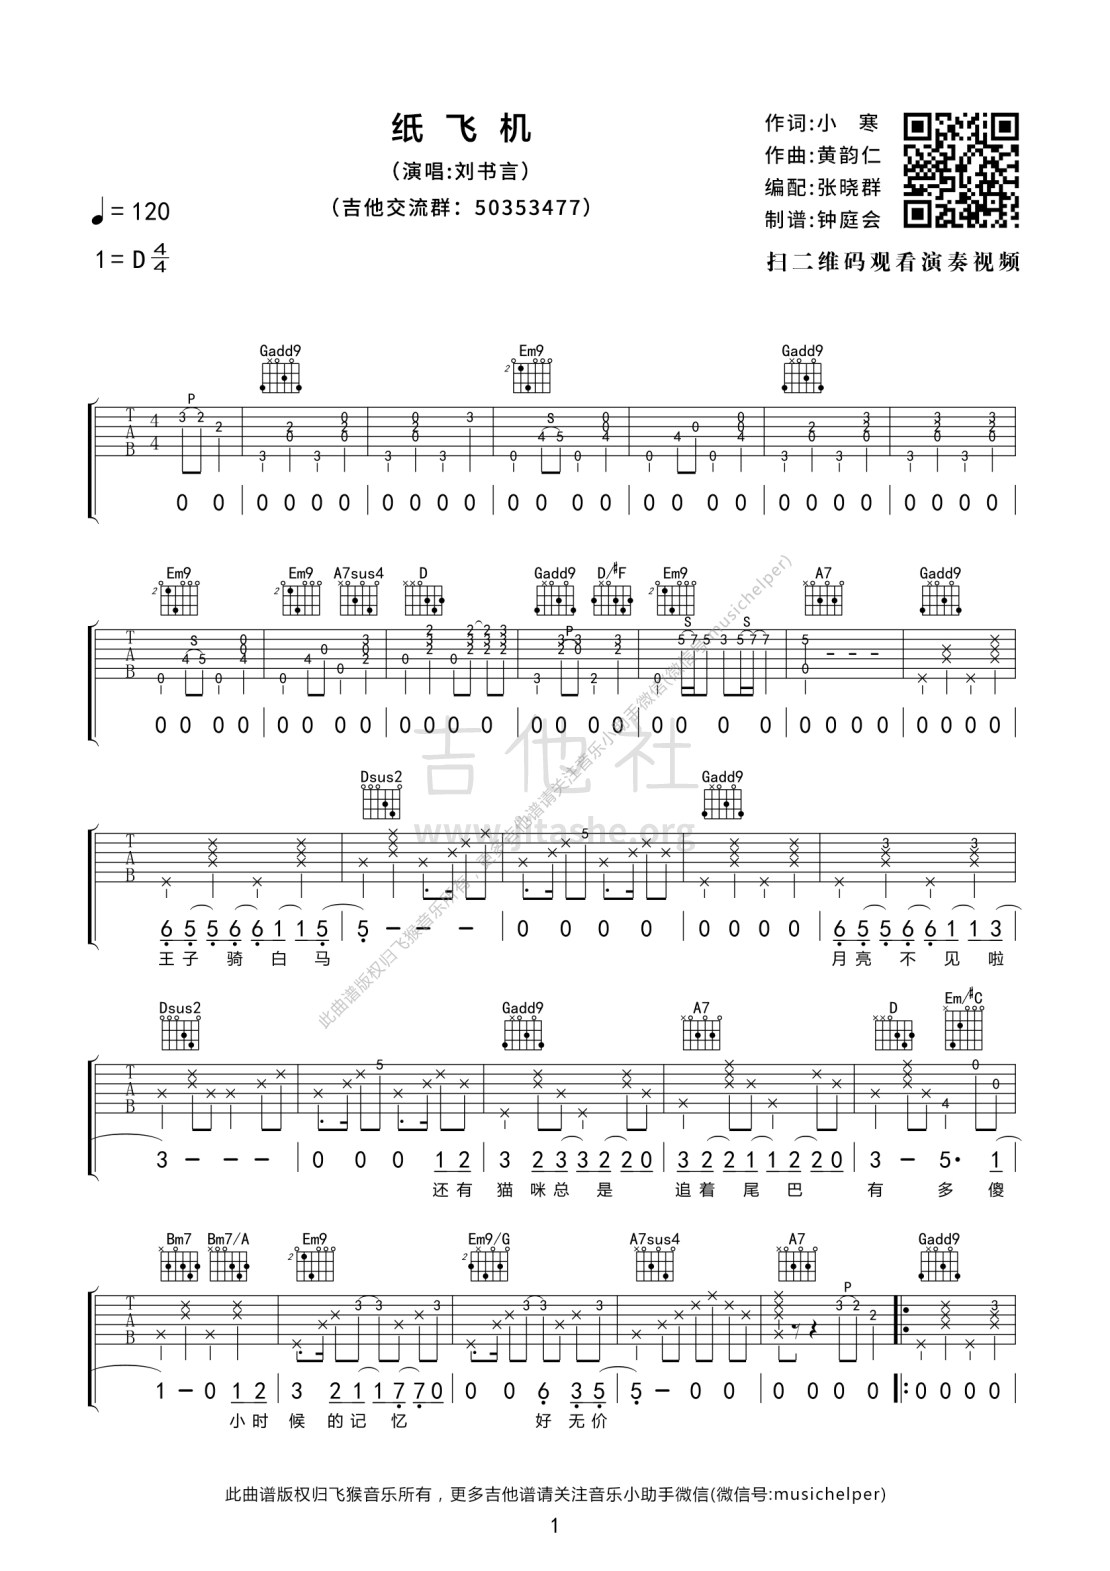 纸飞机(吉他弹唱|飞猴乐器制作出品)吉他谱(图片谱,飞猴乐器,弹唱)_刘书言_纸飞机 01.jpg